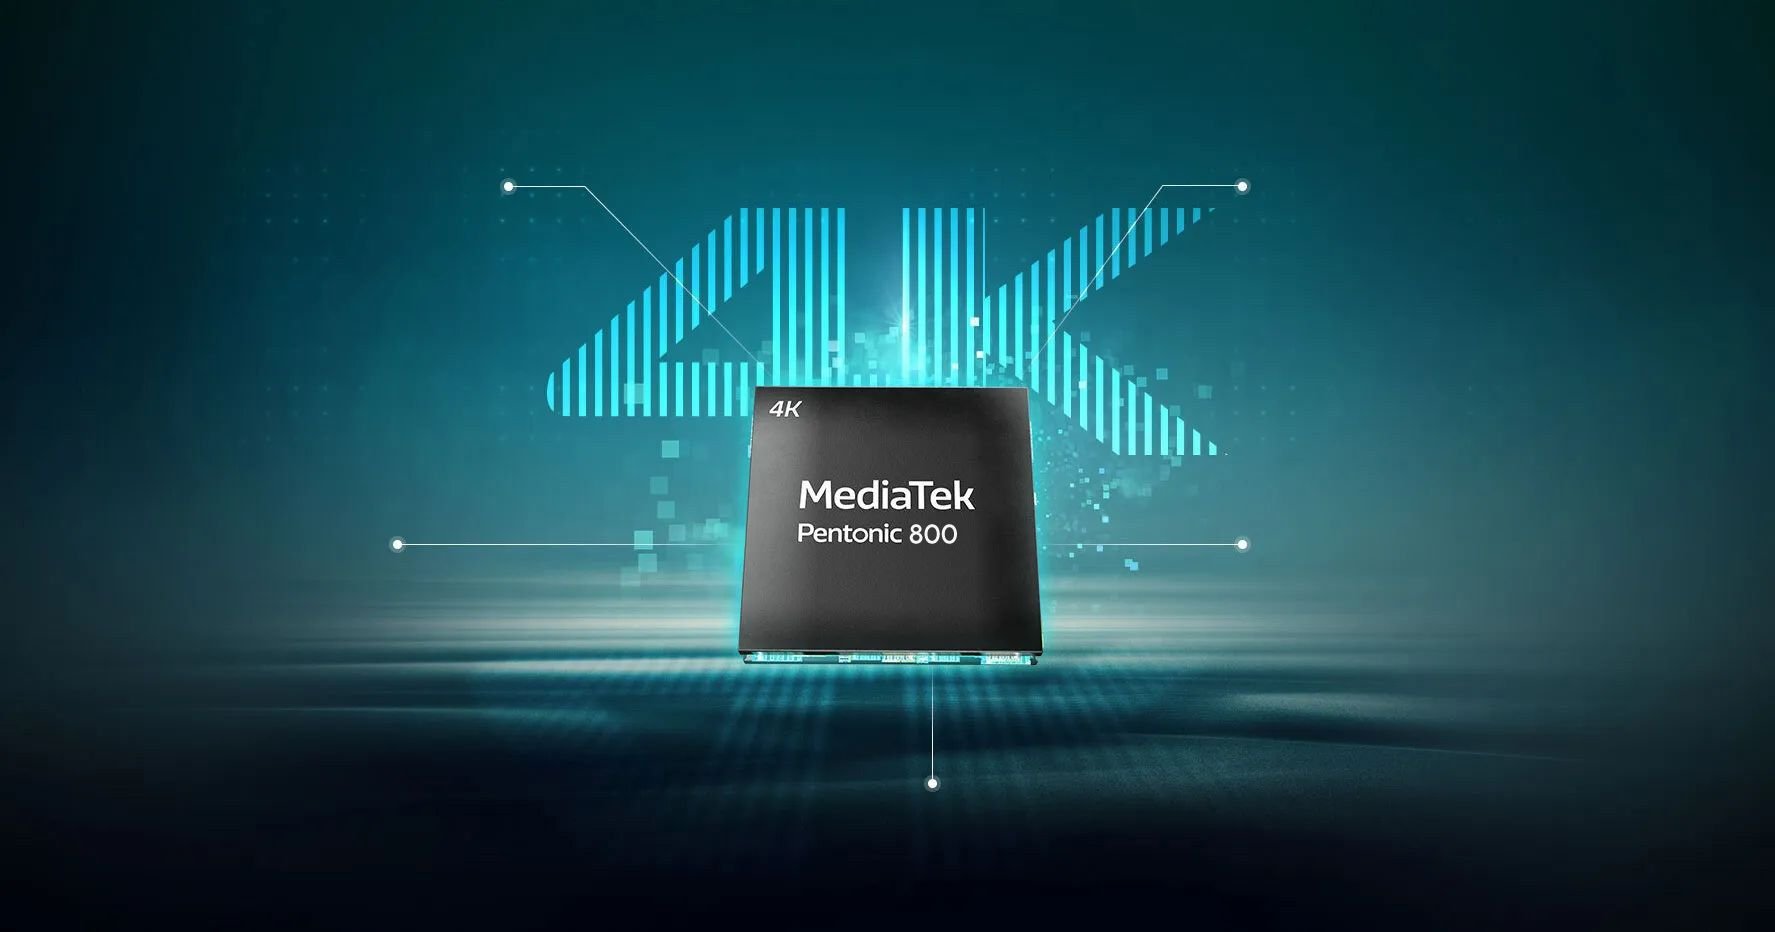 El chip Mediatek Pentonic 800 será capaz de manejar 500 mil zonas virtuales por Inteligencia Artificial